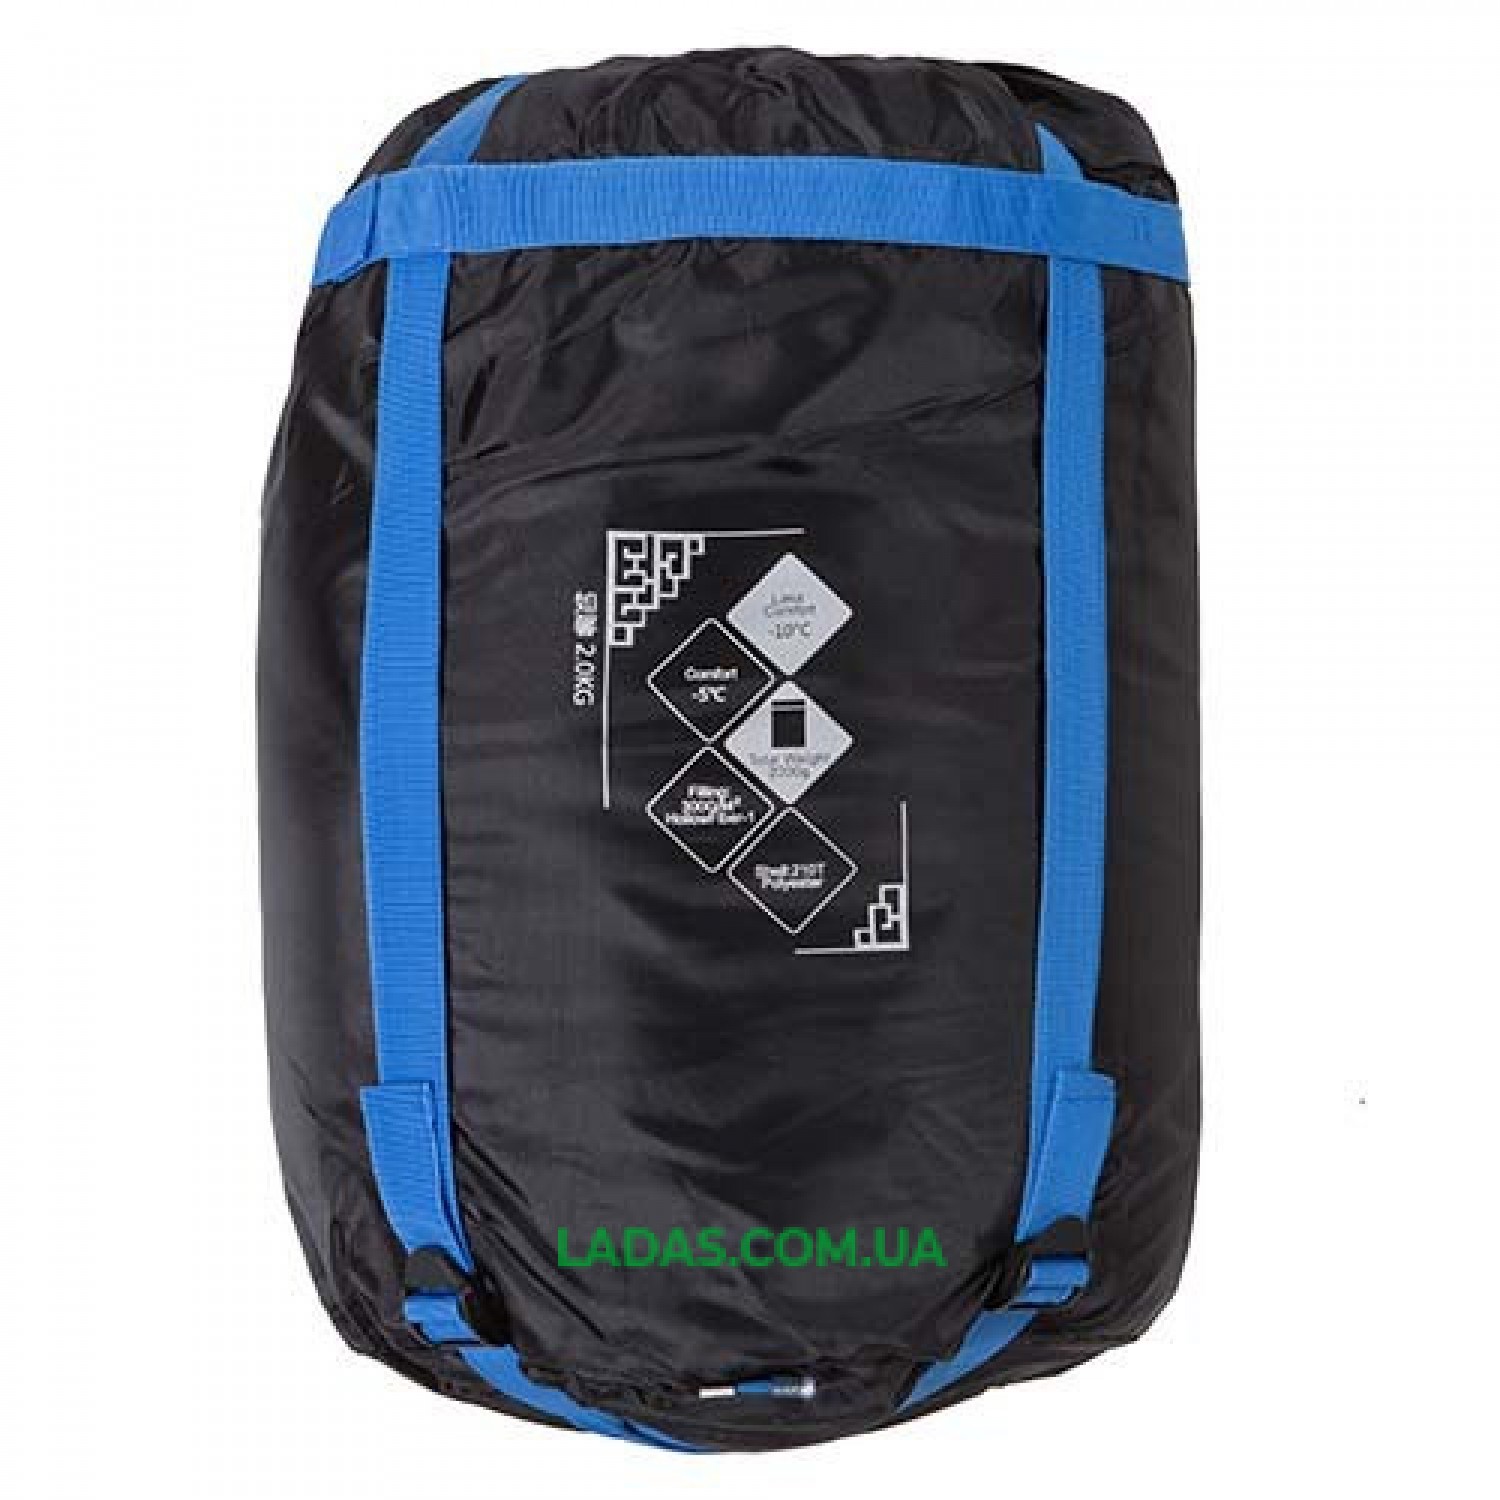 Спальный мешок одеяло REDCAMP RC484/3-2BB (PL, 400г на м2,р-р 190*84cm, цвет синий)